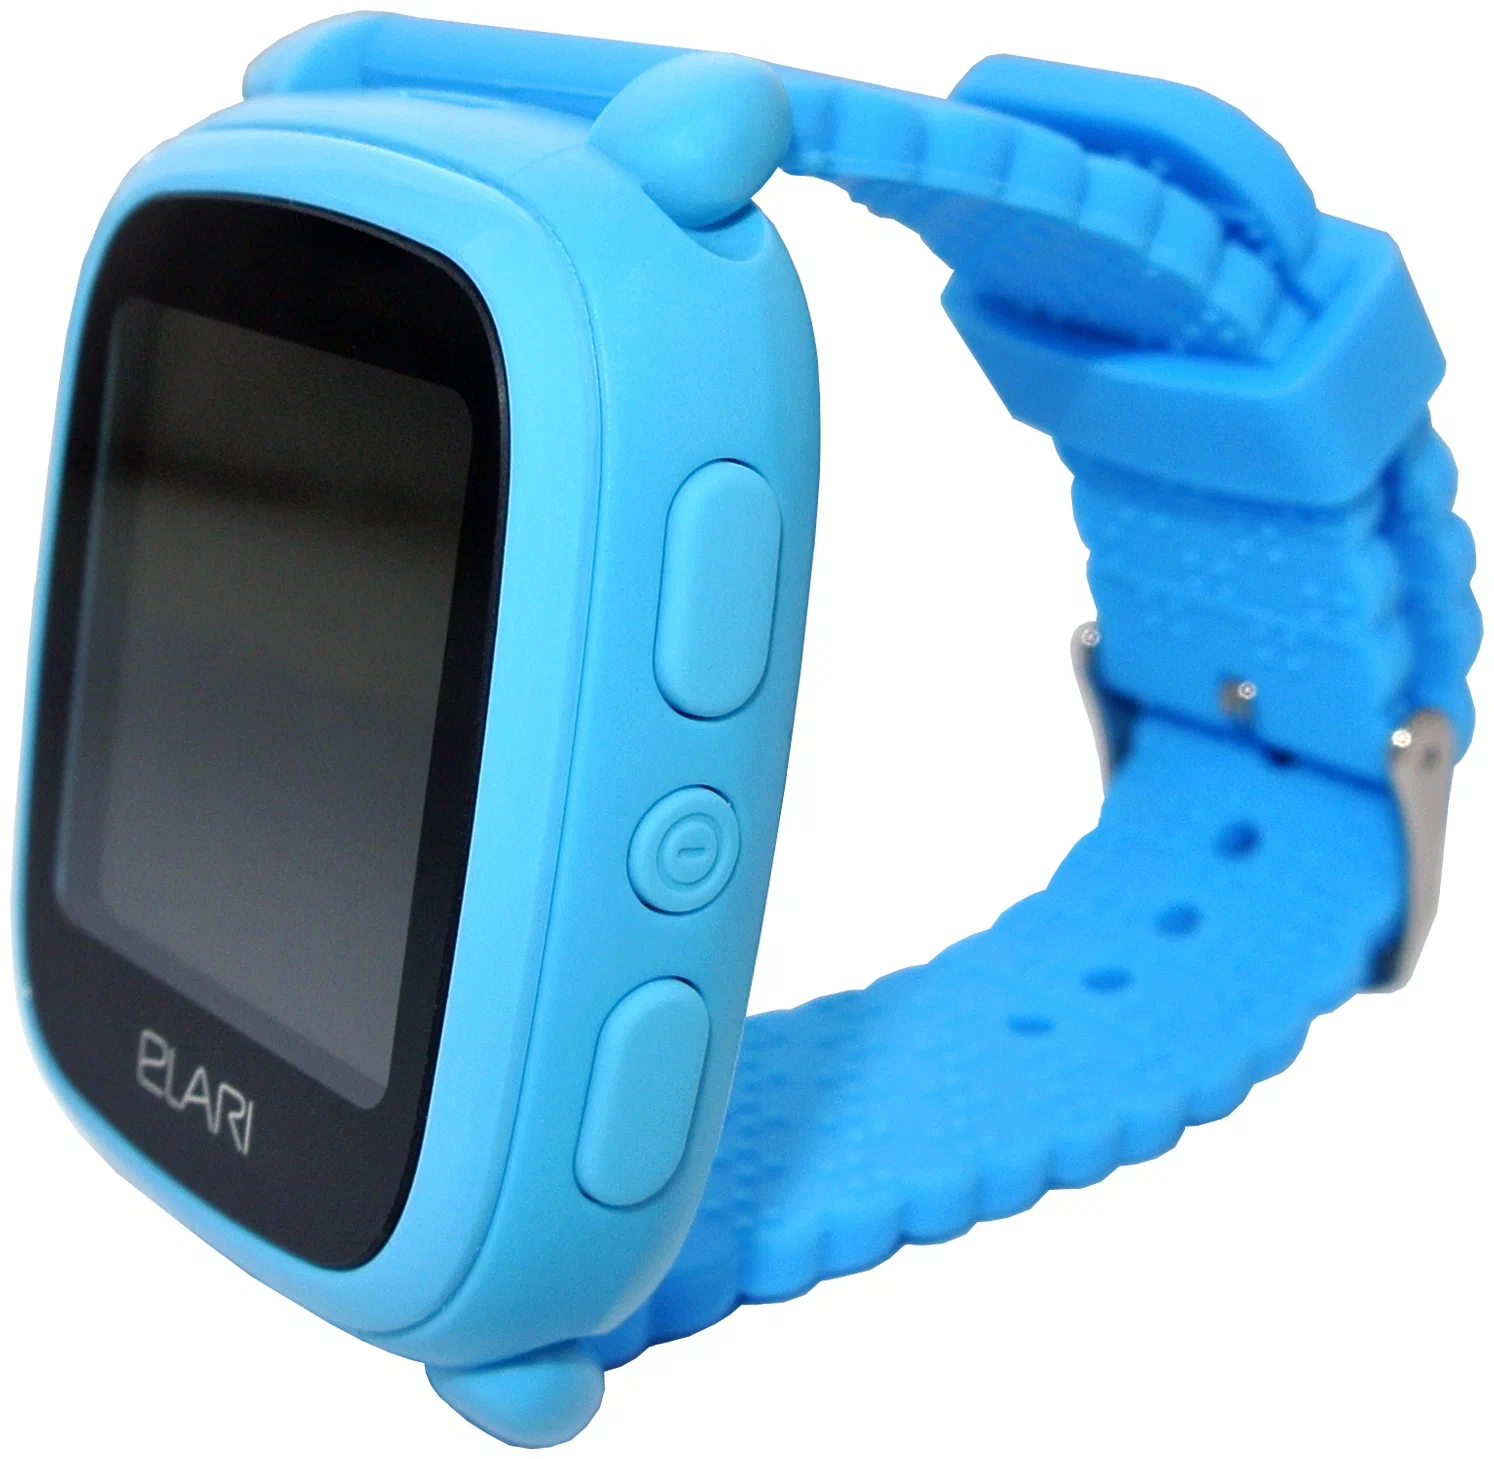 Детские смарт-часы Elari KidPhone 2 Синий в Челябинске купить по недорогим ценам с доставкой